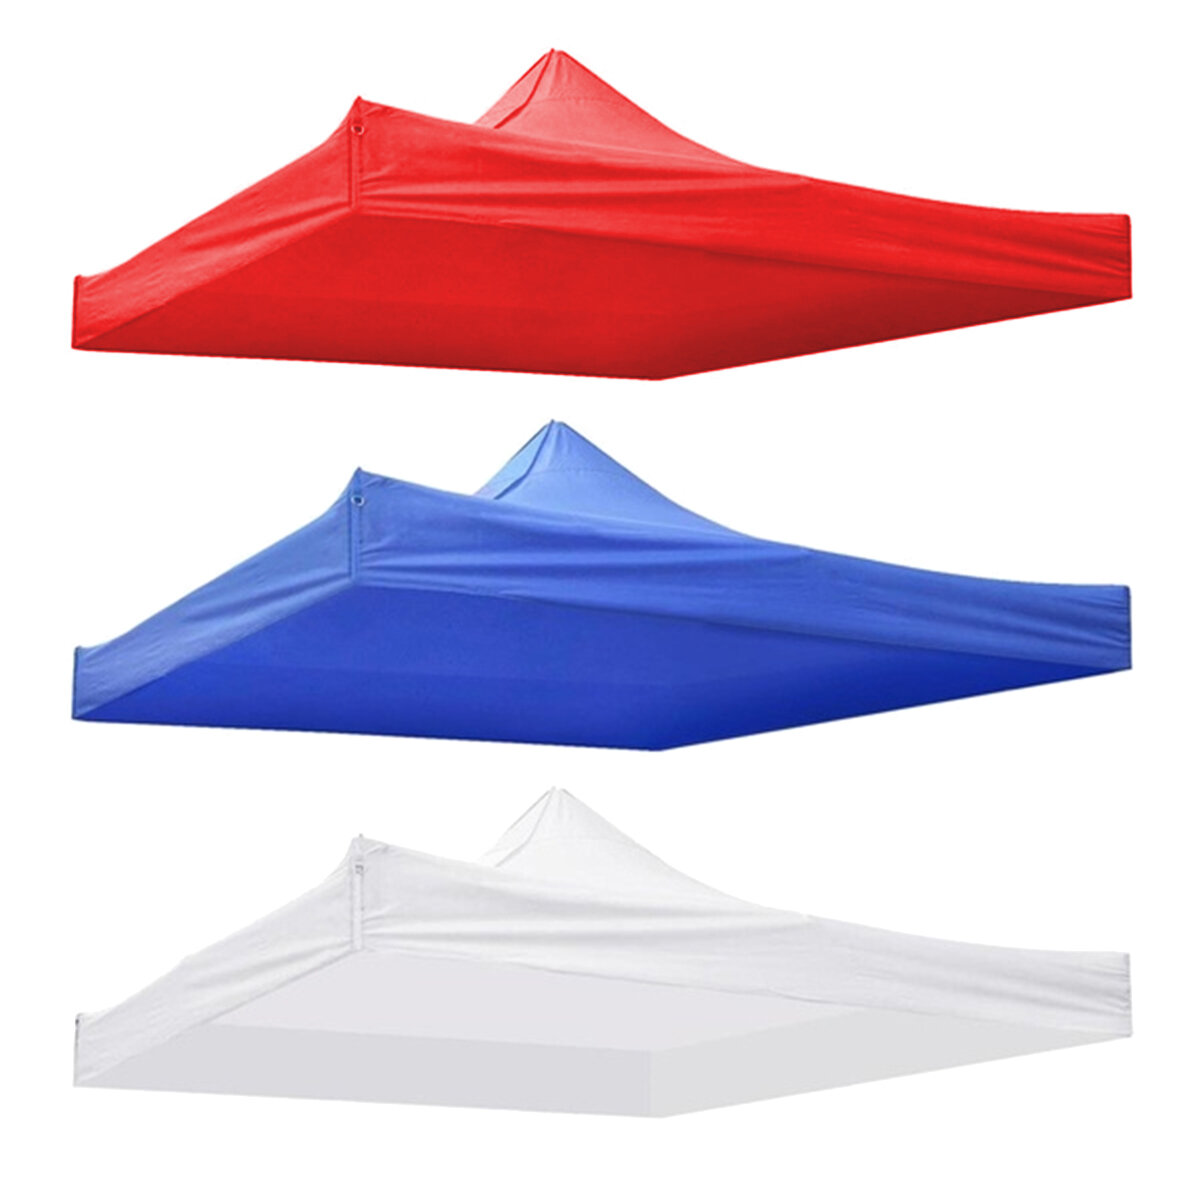 Toit de tente de 2x2m en remplacement, imperméable, anti-poussière et protection solaire pour une utilisation en extérieur comme le camping ou le jardin. Couleurs: bleu, rouge, blanc.